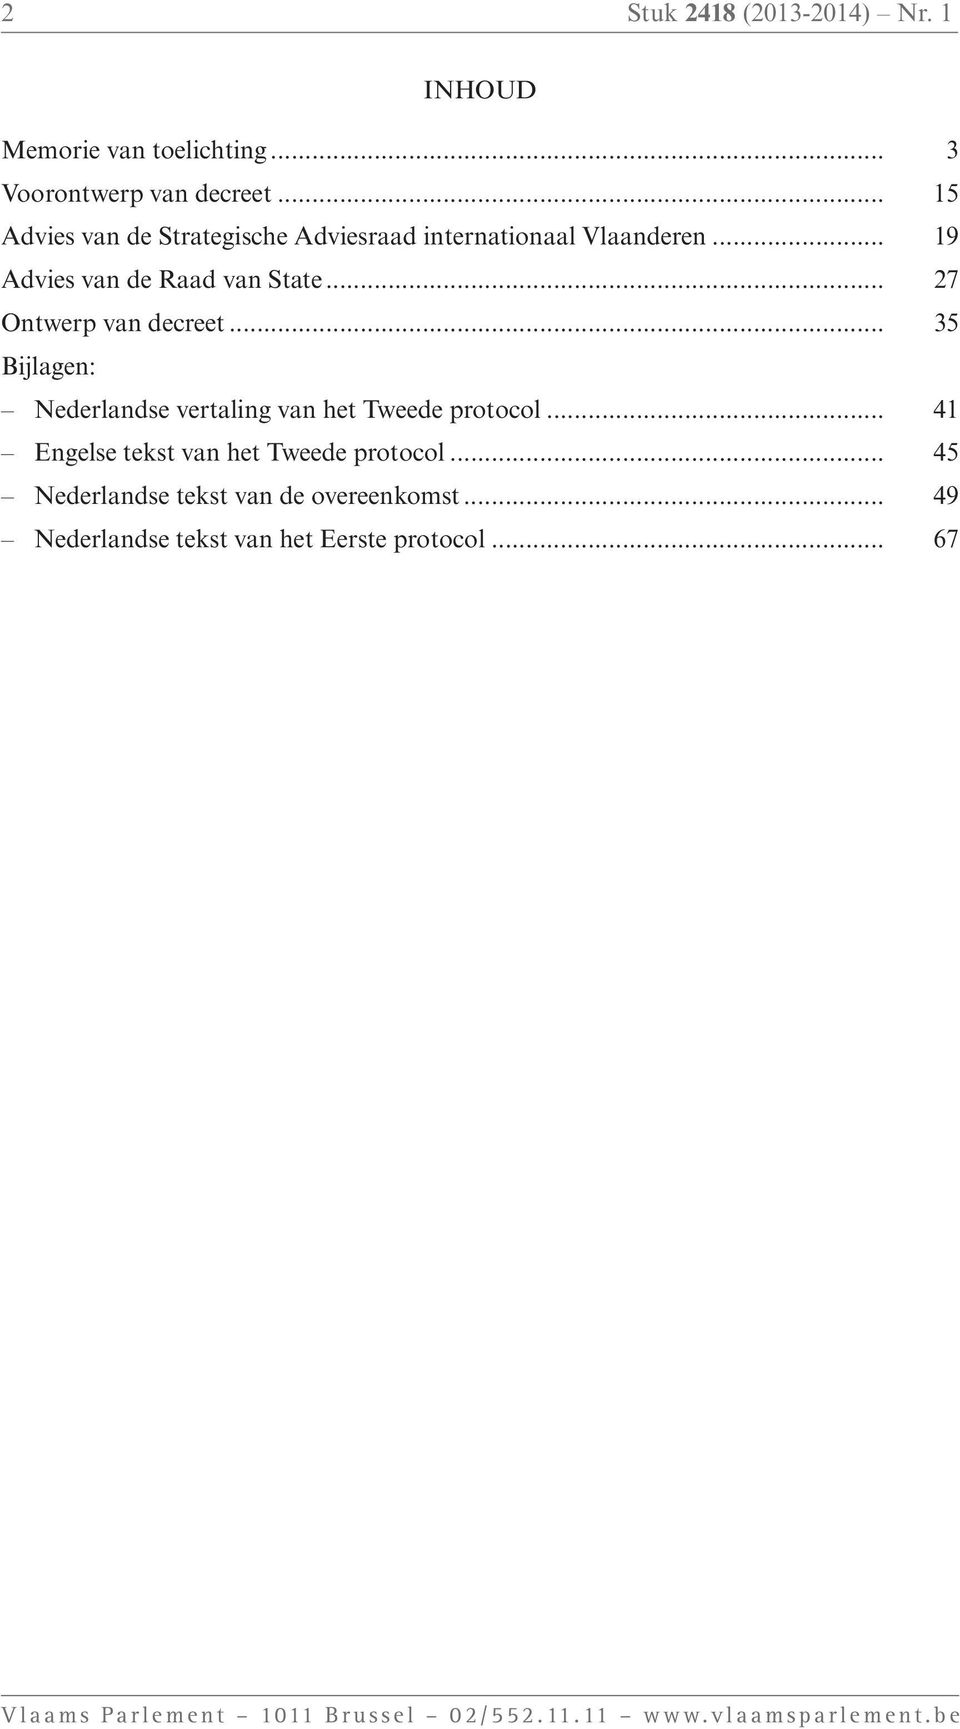 .. 35 Bijlagen: Nederlandse vertaling van het Tweede protocol... 41 Engelse tekst van het Tweede protocol.